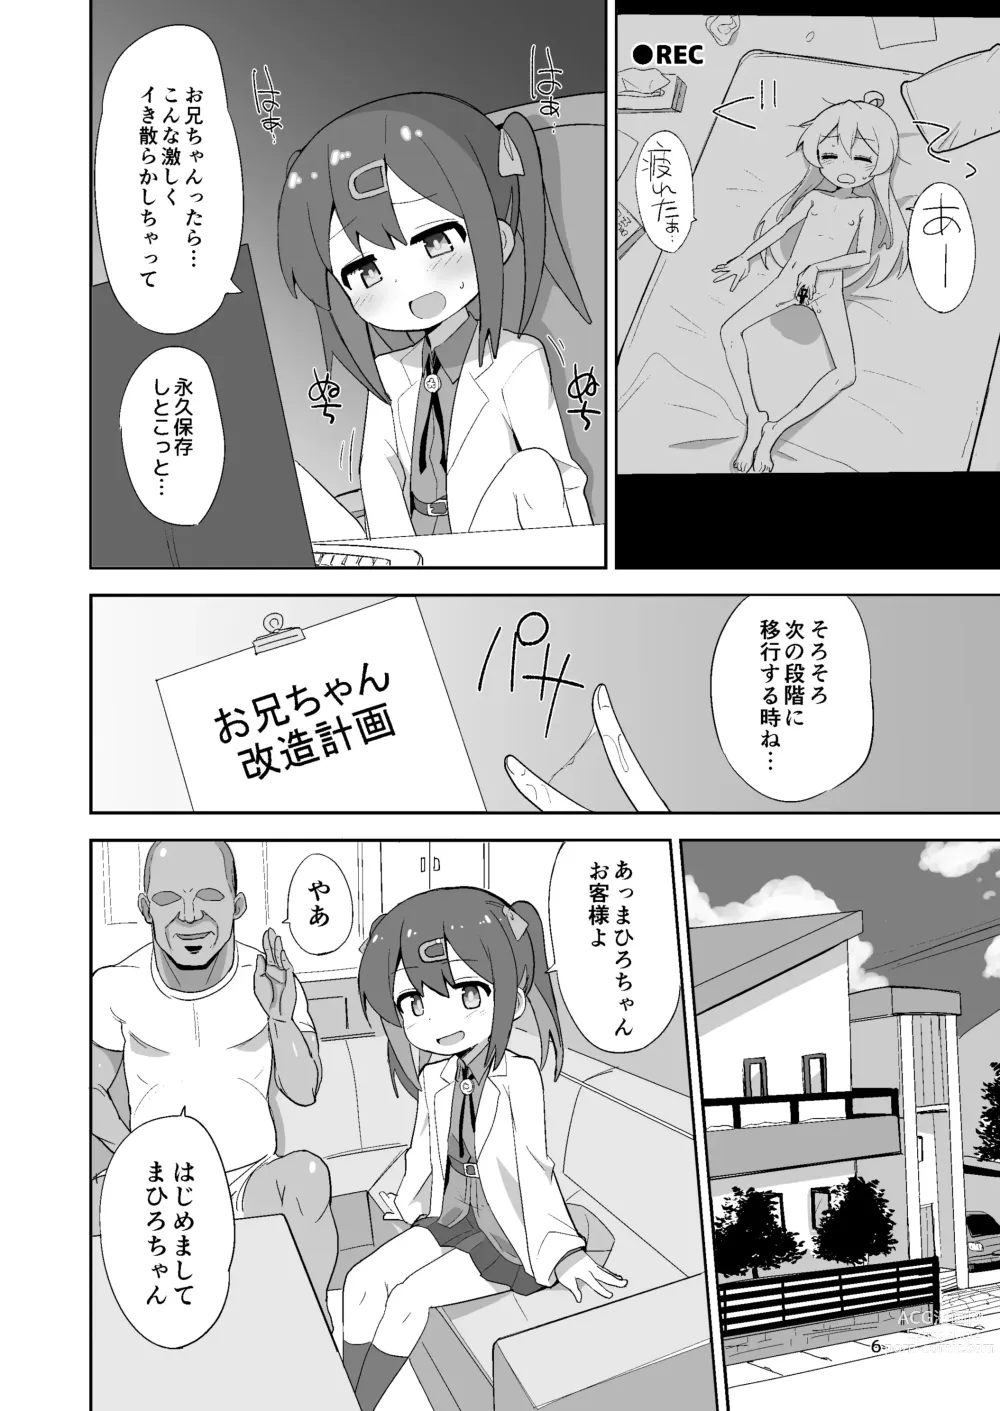 Page 6 of doujinshi Onii-chan wa Puniman!